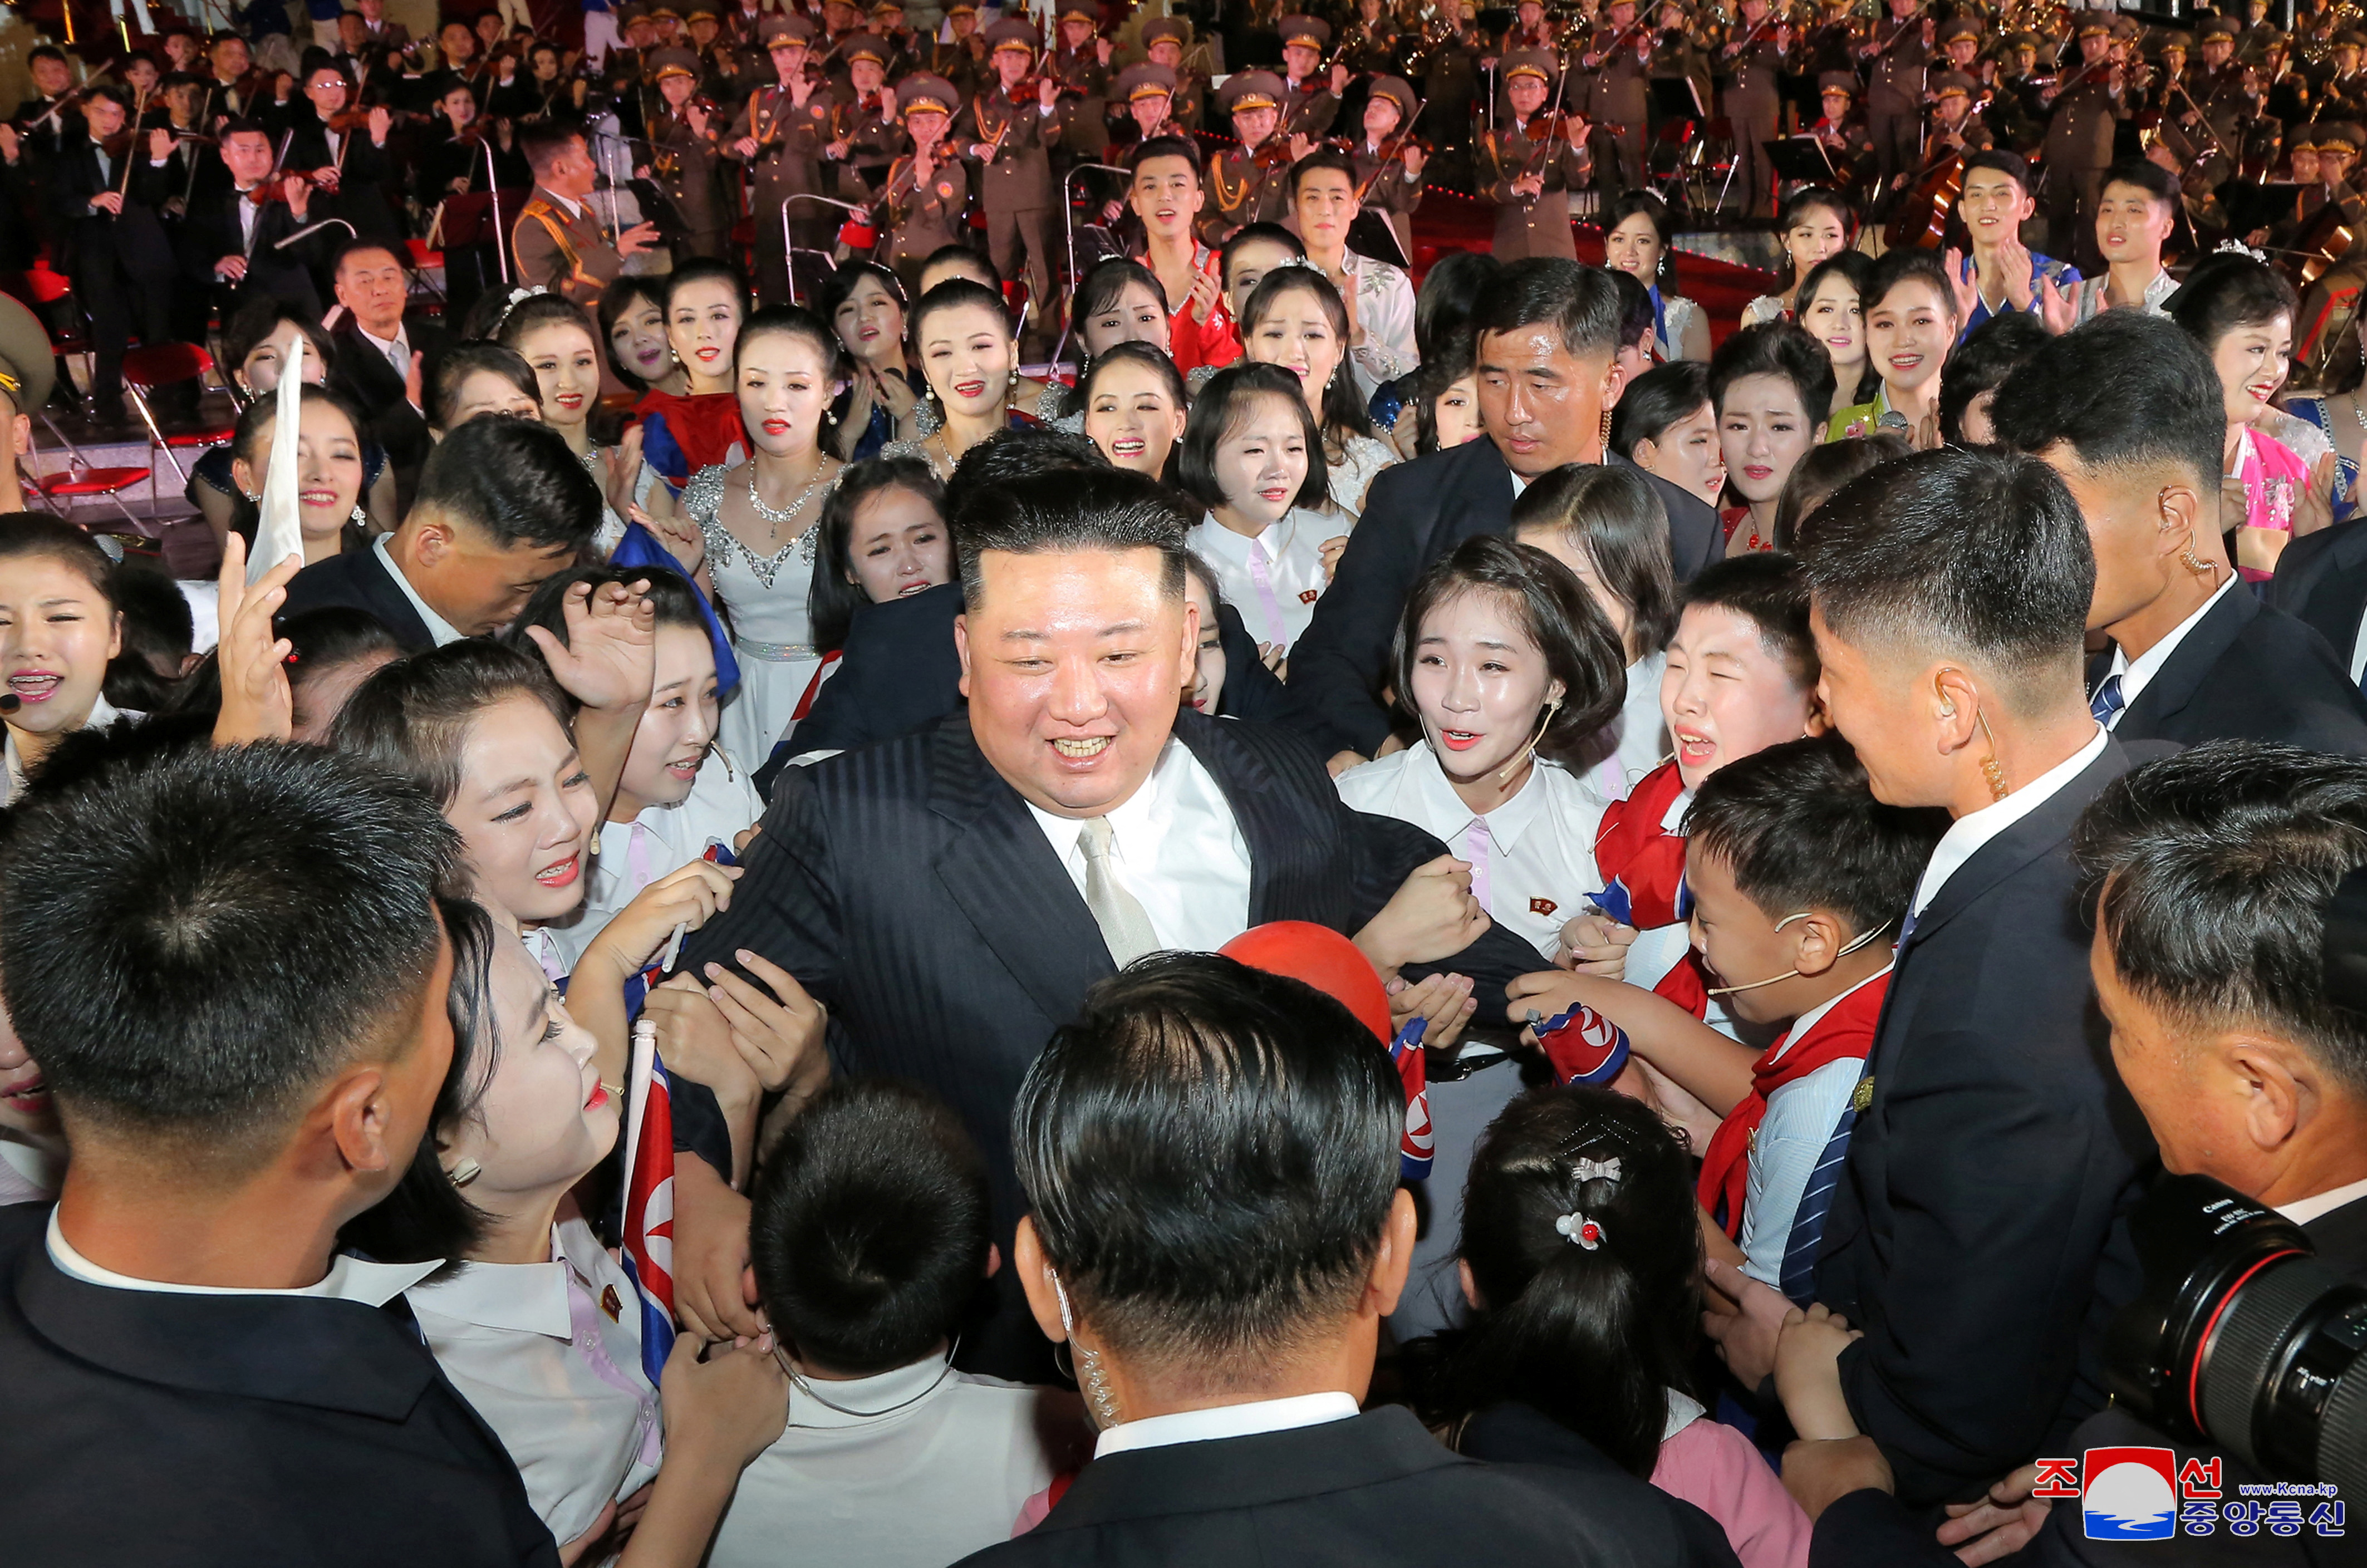 Kim Jong Un entre la multitud en las celebraciones por el 74º aniversario de la fundación de Corea del Norte, en Pyongyang, Corea del Norte. Agencia Central de Noticias de Corea del Norte (KCNA) el 9 de septiembre de 2022. KCNA vía REUTERS